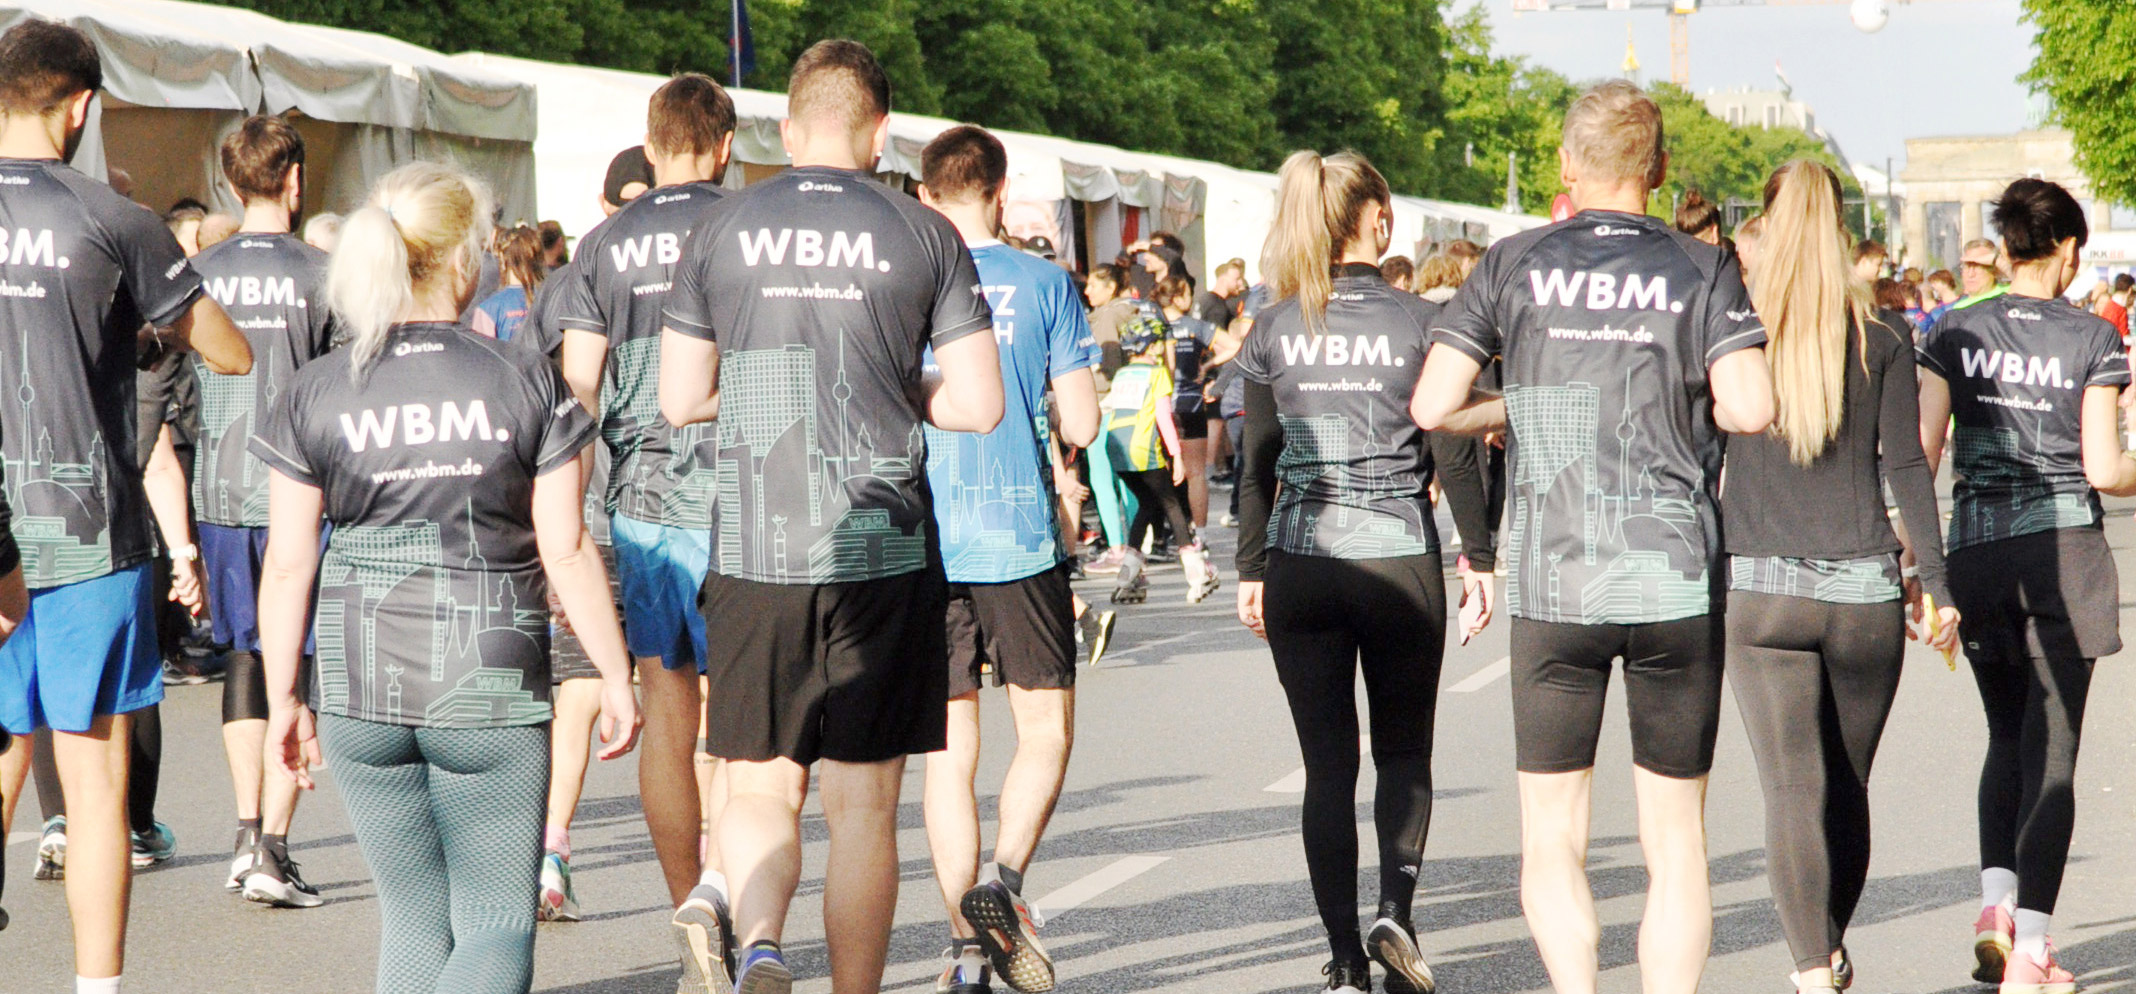 Eine Gruppe Laufender mit Firmentrikots der WBM, die an einem Laufevent in Berlin teilnehmen.